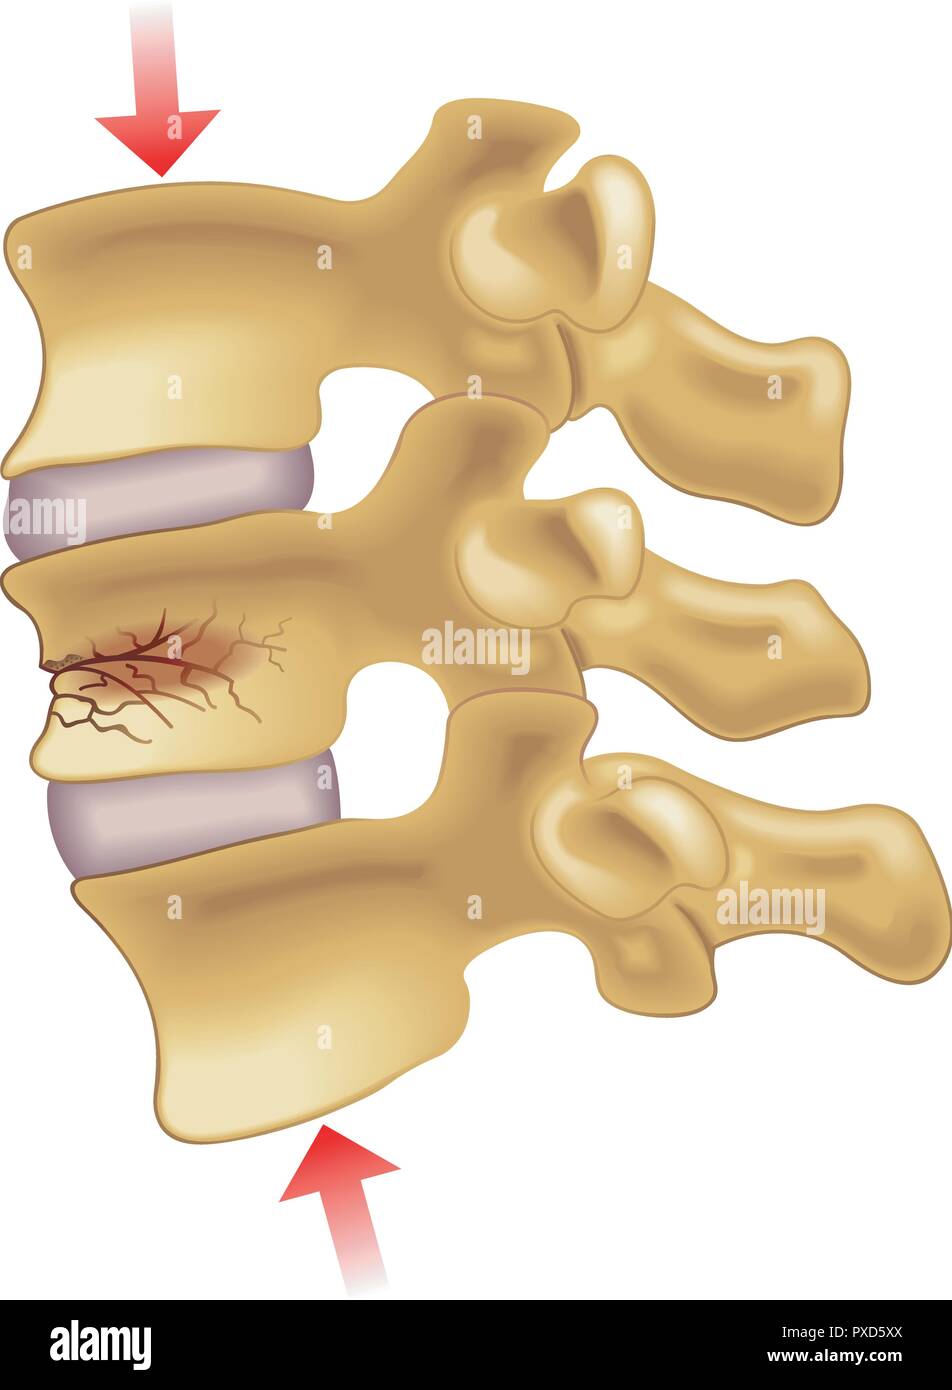 Vektor medizinischen Abbildung der Symptome der vertebralen Fraktur Komprimierung Stock Vektor